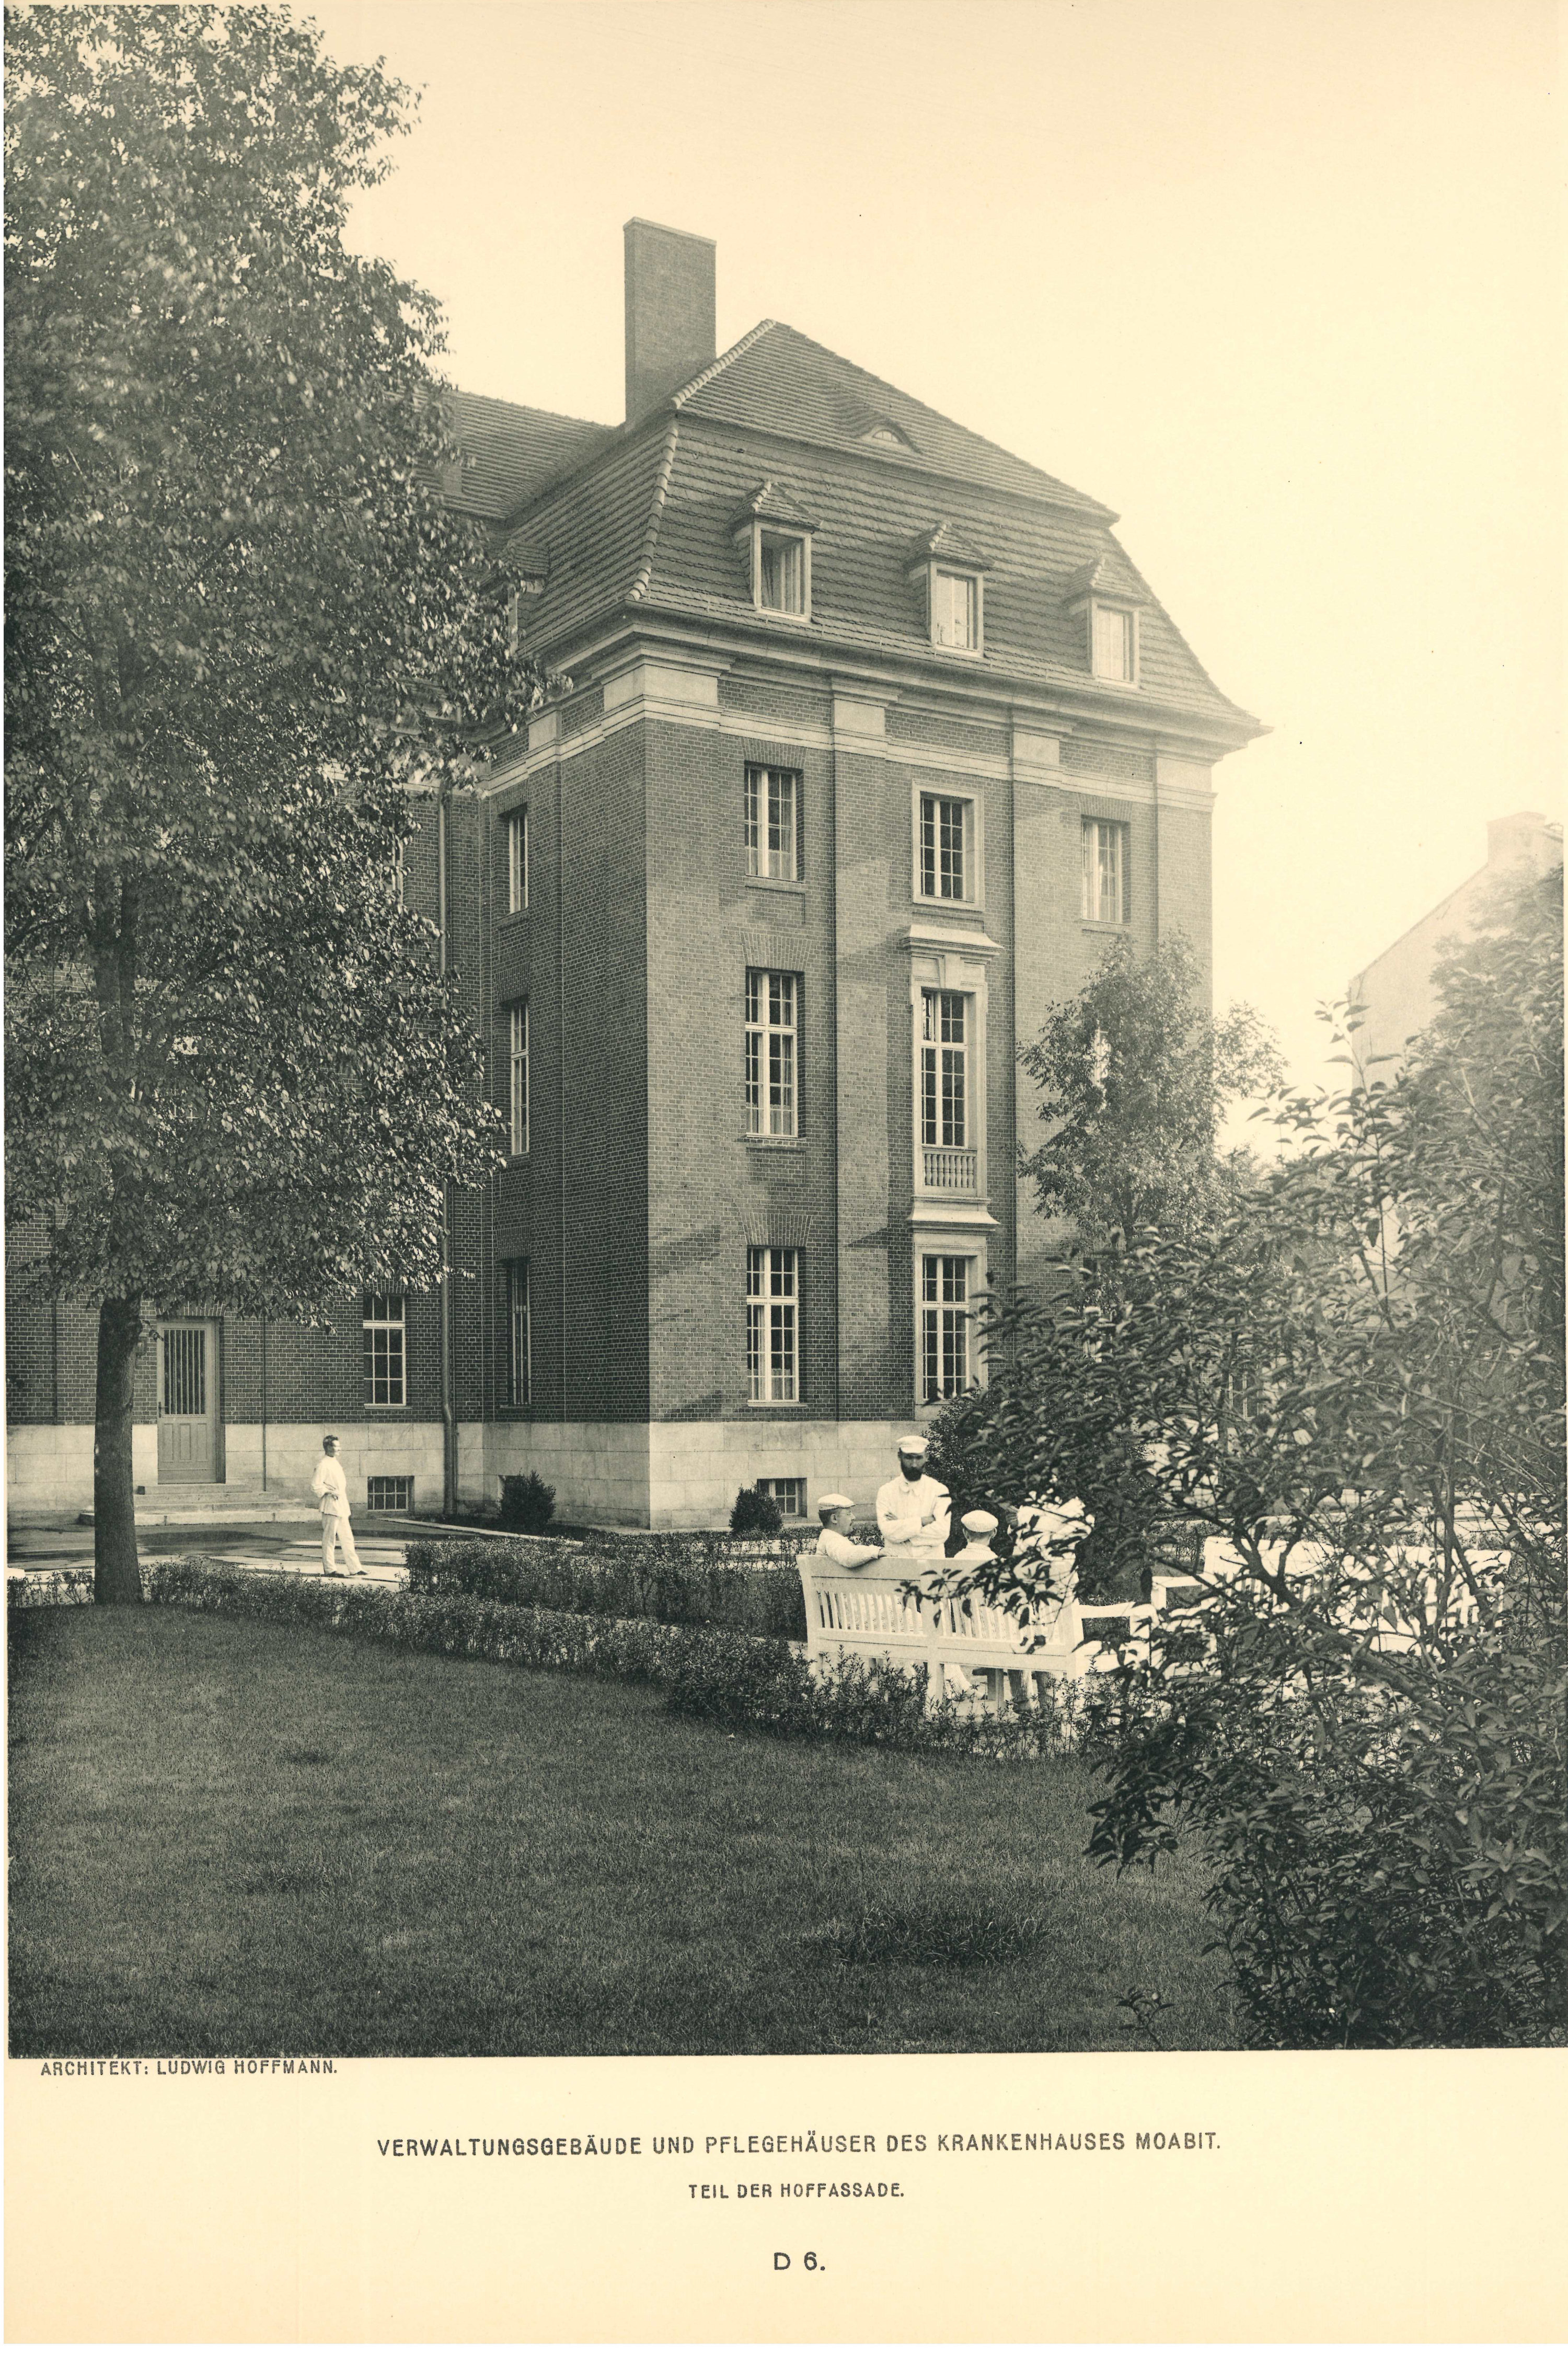 Verwaltungsgebäude und Pflegehäuser des Krankenhaus Moabit, Teil der Hoffassade 1907